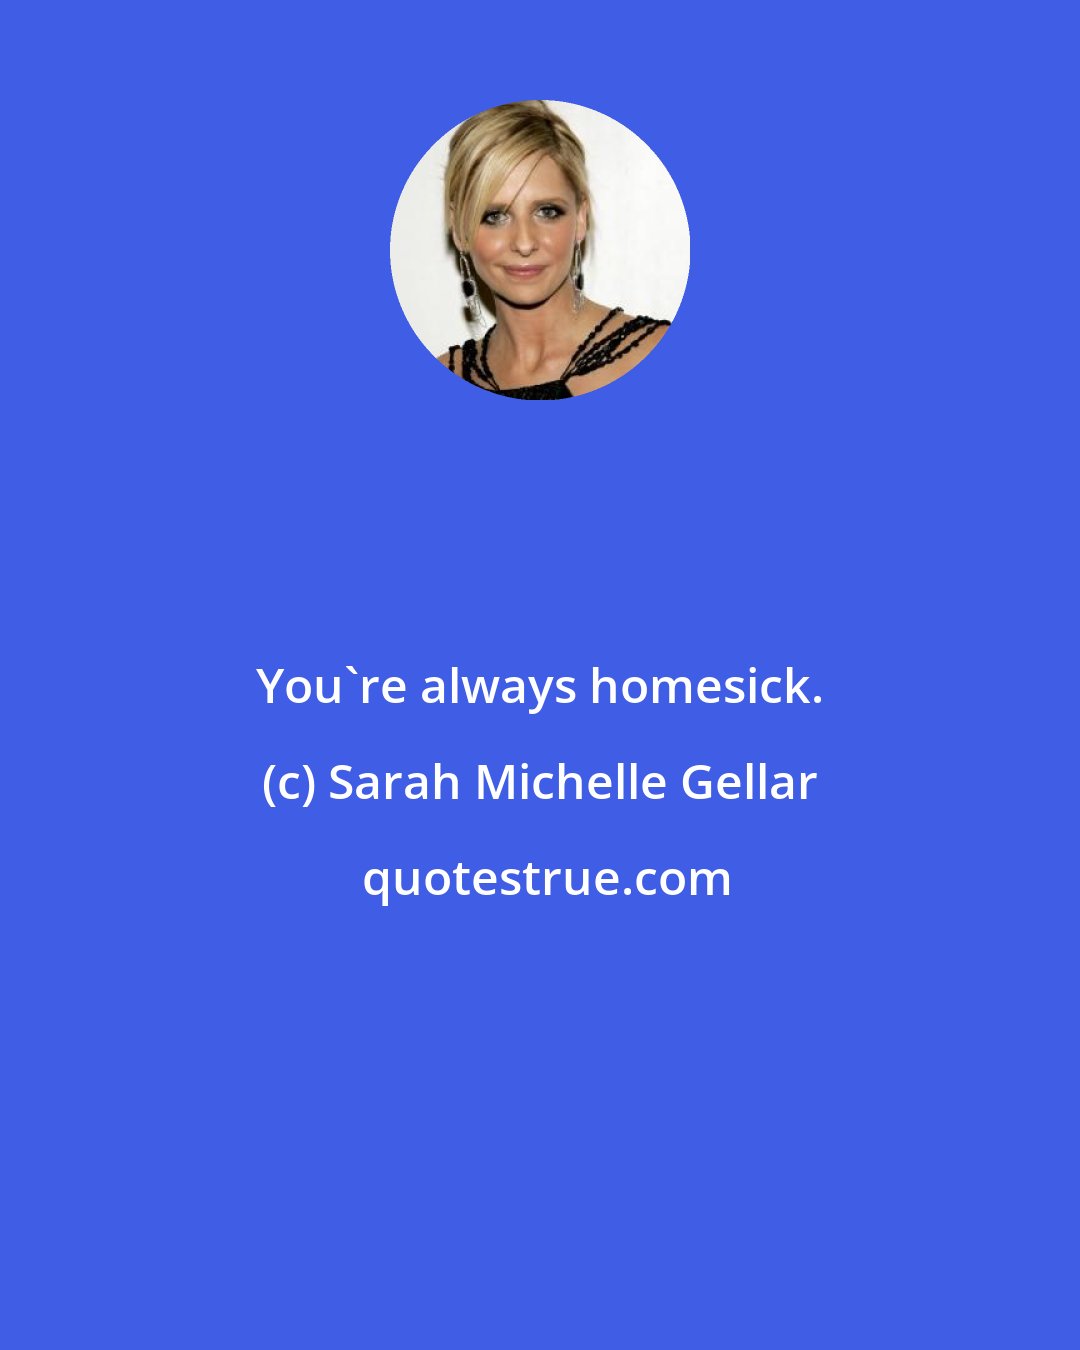 Sarah Michelle Gellar: You're always homesick.